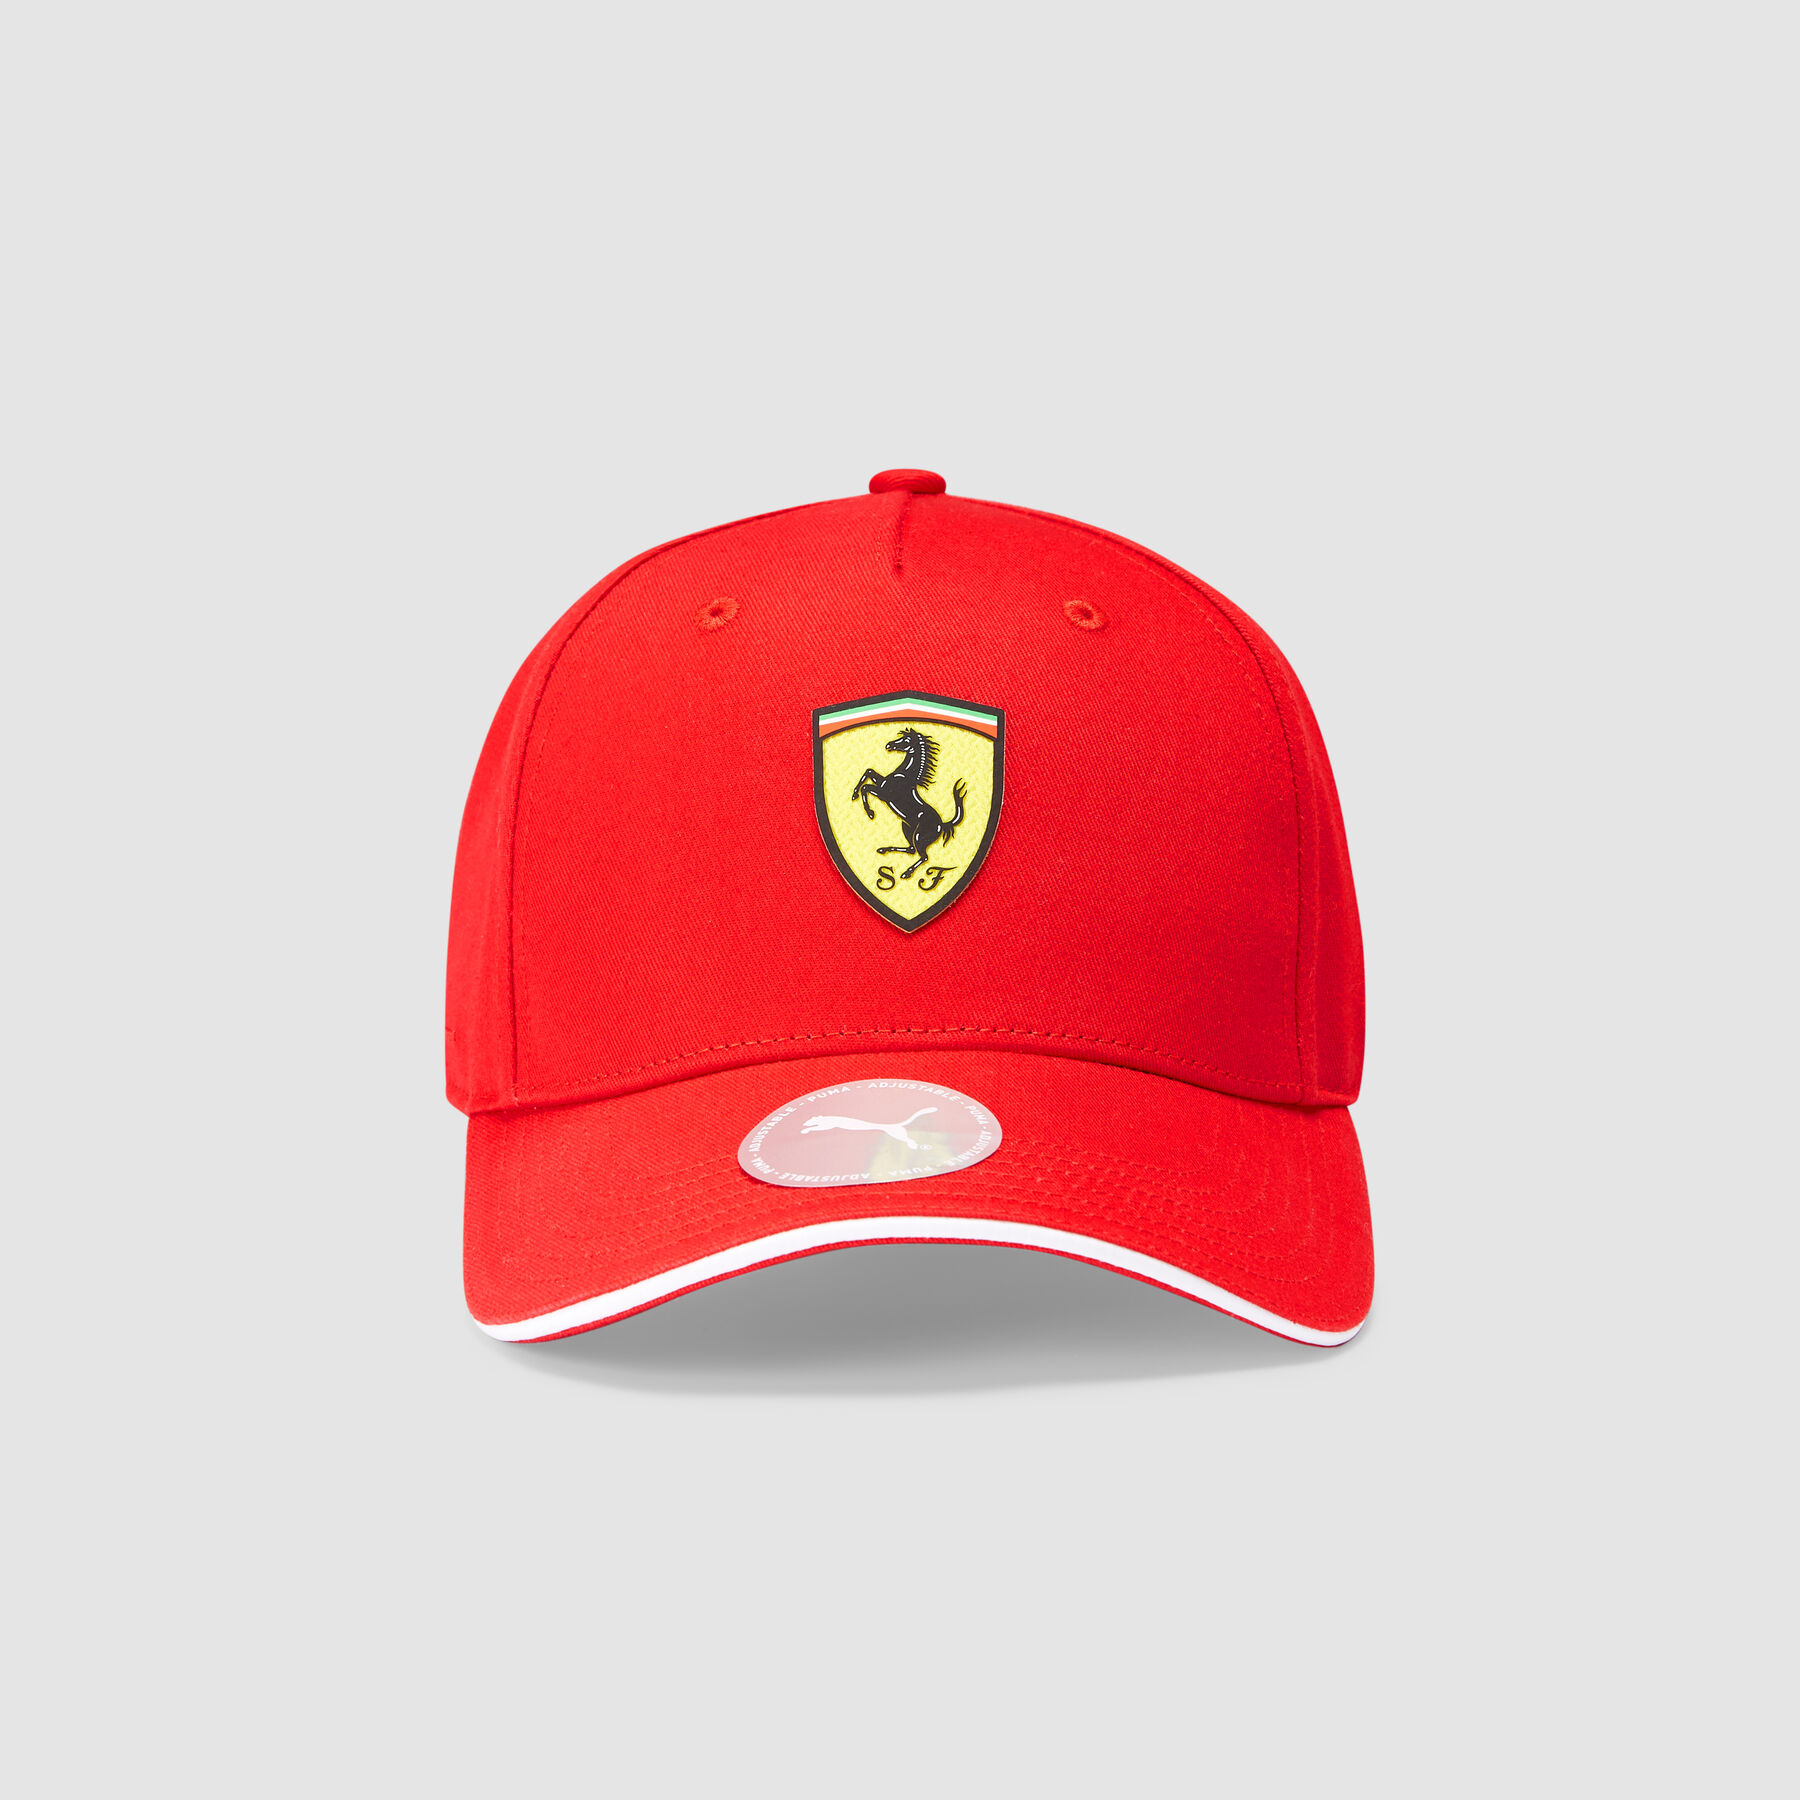 Ferrari Red One Size Classic Cap 